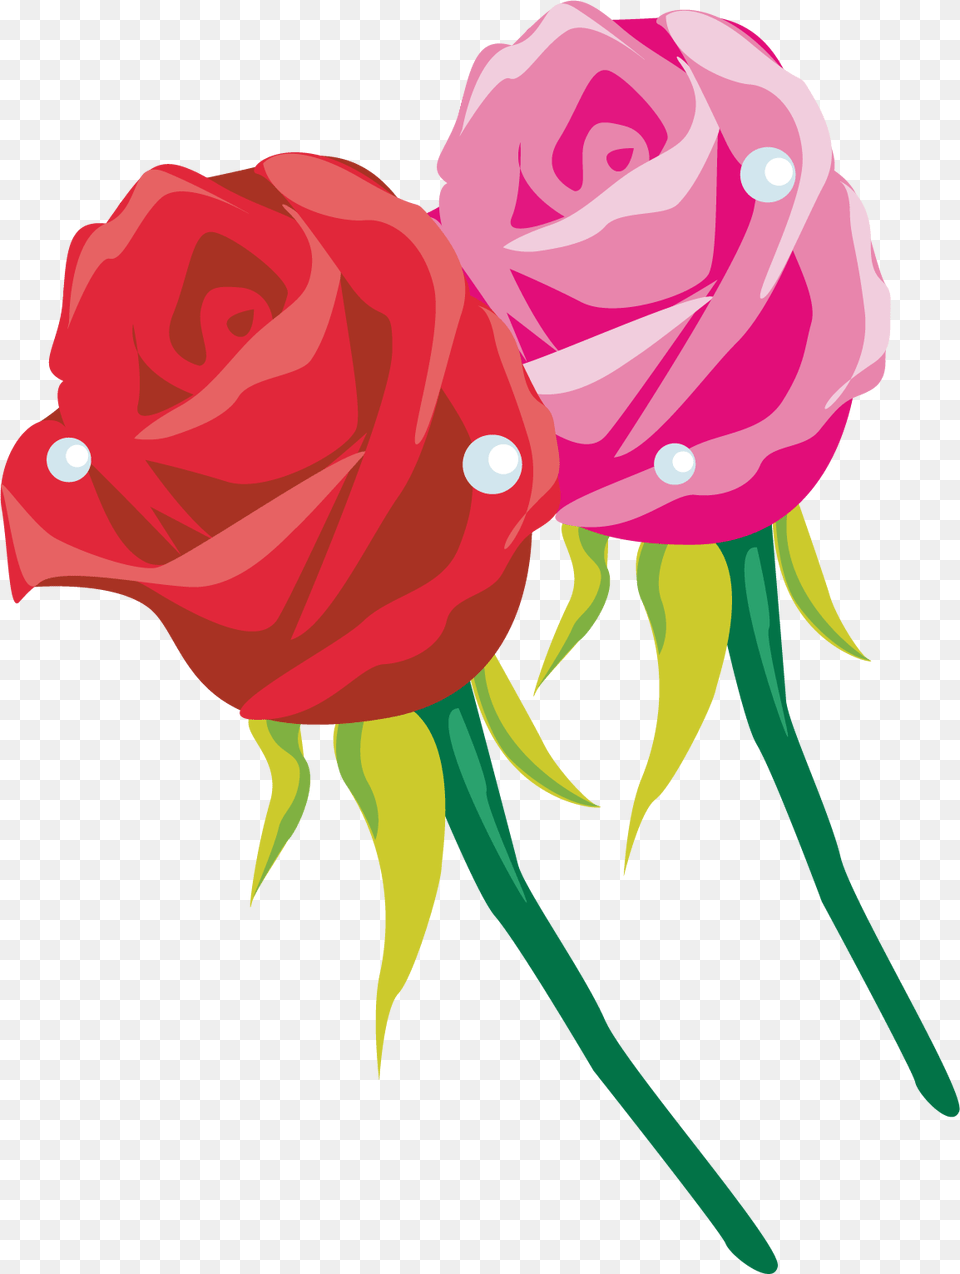 Image, Flower, Plant, Rose, Carnation Free Transparent Png